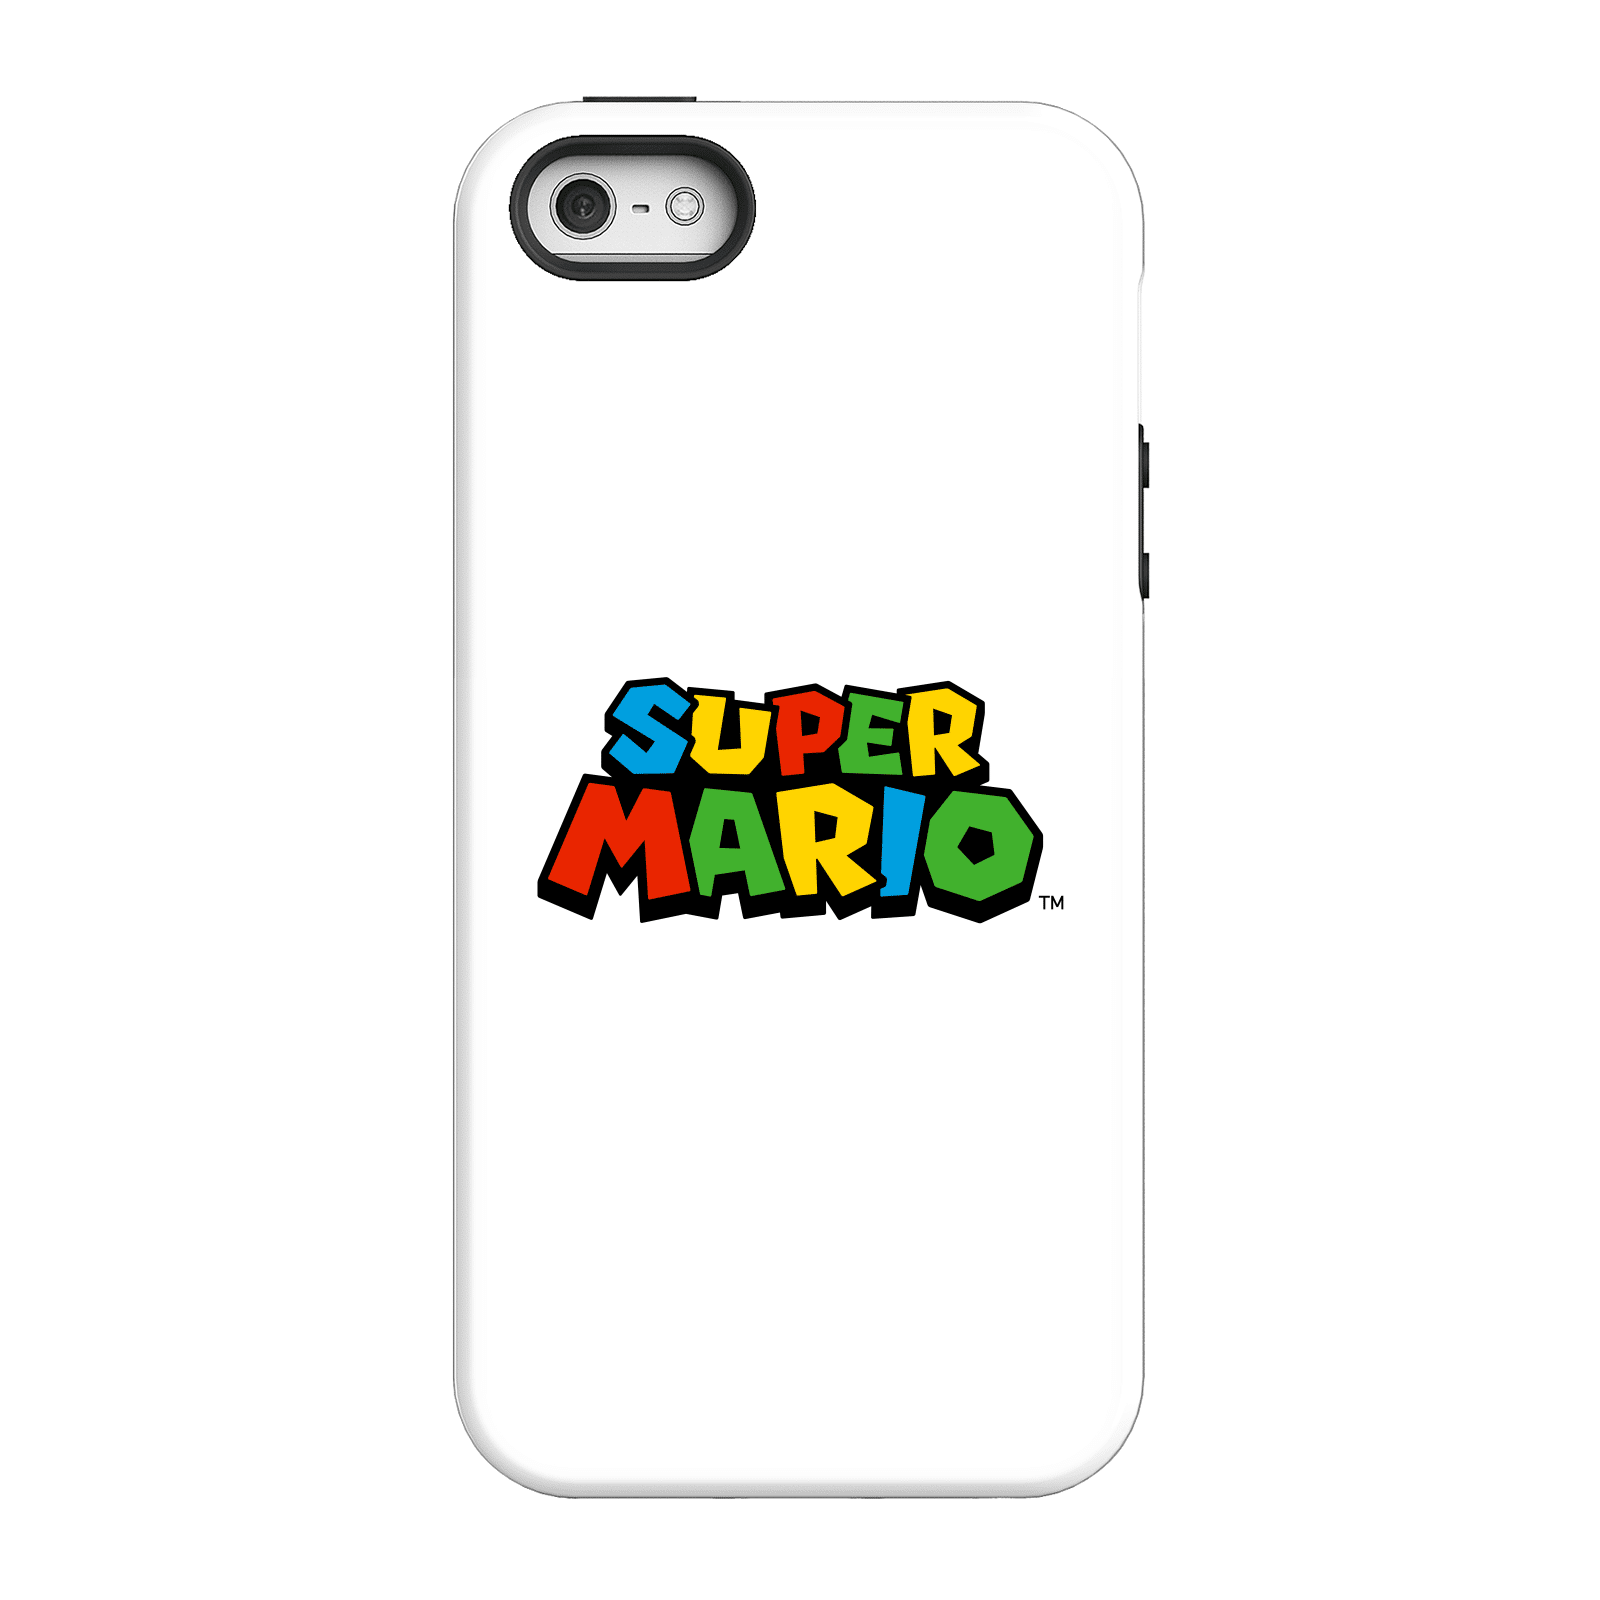 Nintendo Super Mario Colour Logo Phone Case - iPhone 5/5s - Tough Case - Matte